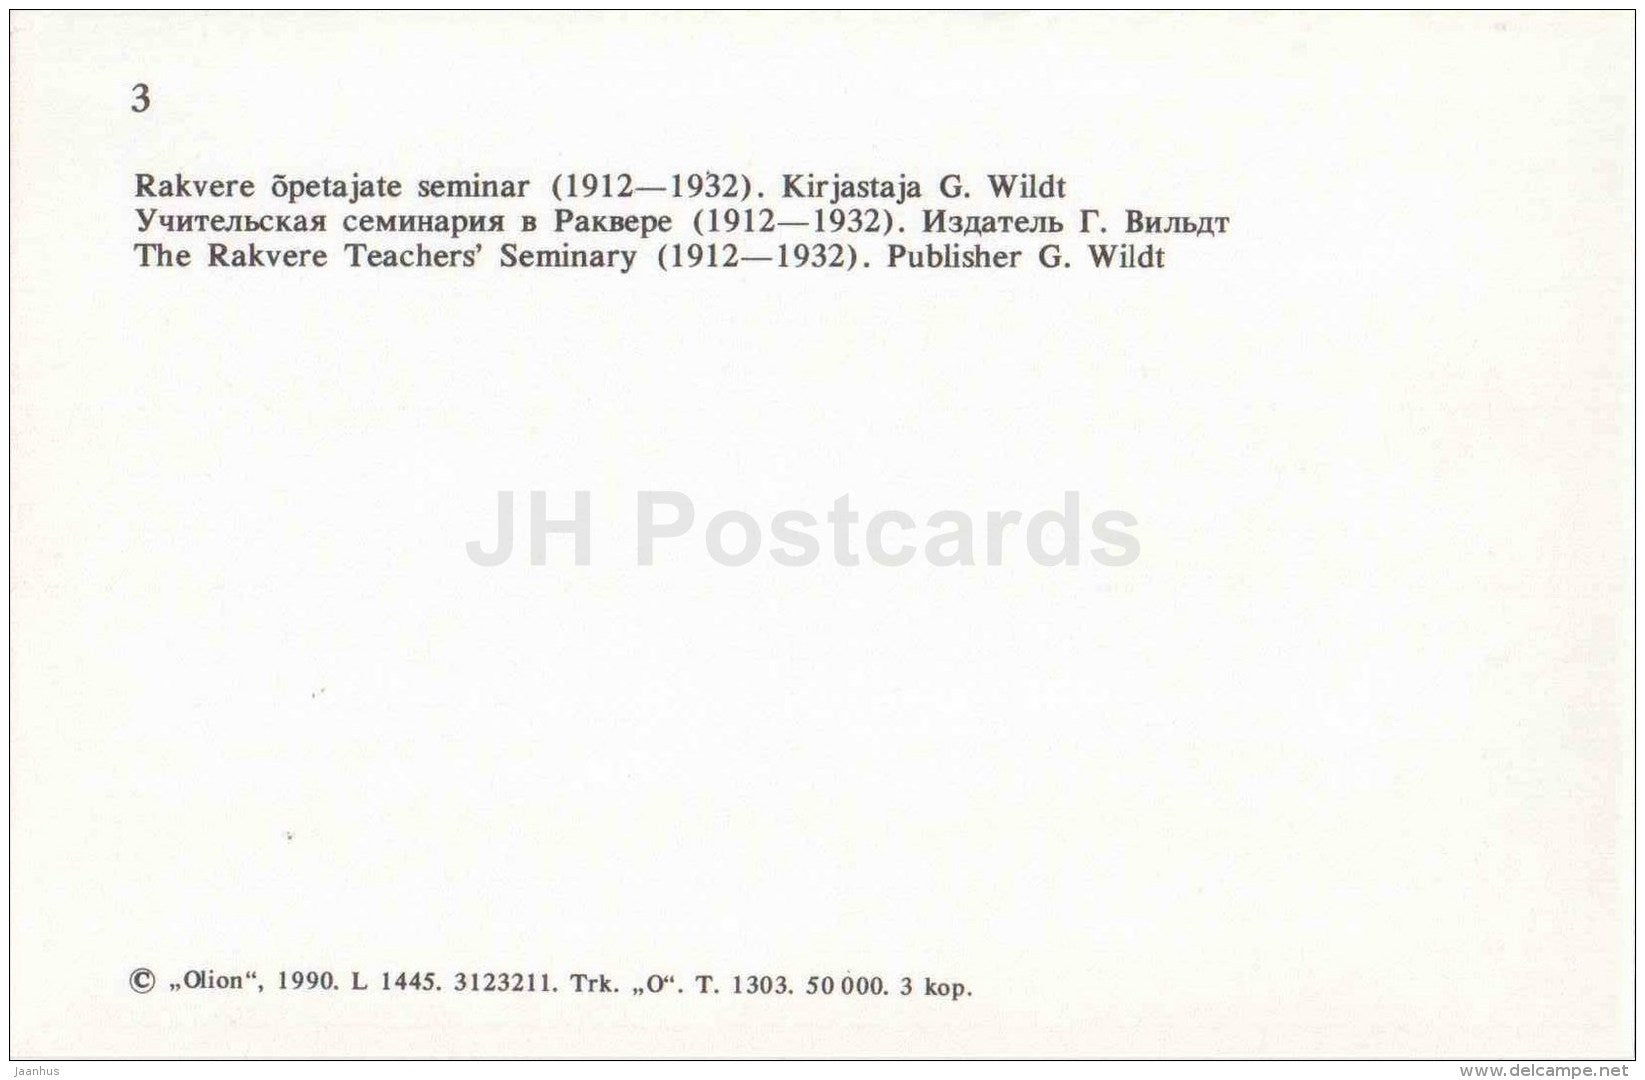 The Rakvere Teacher´s Seminary - Virumaa - OLD POSTCARD REPRODUCTION! - 1990 - Estonia USSR - unused - JH Postcards